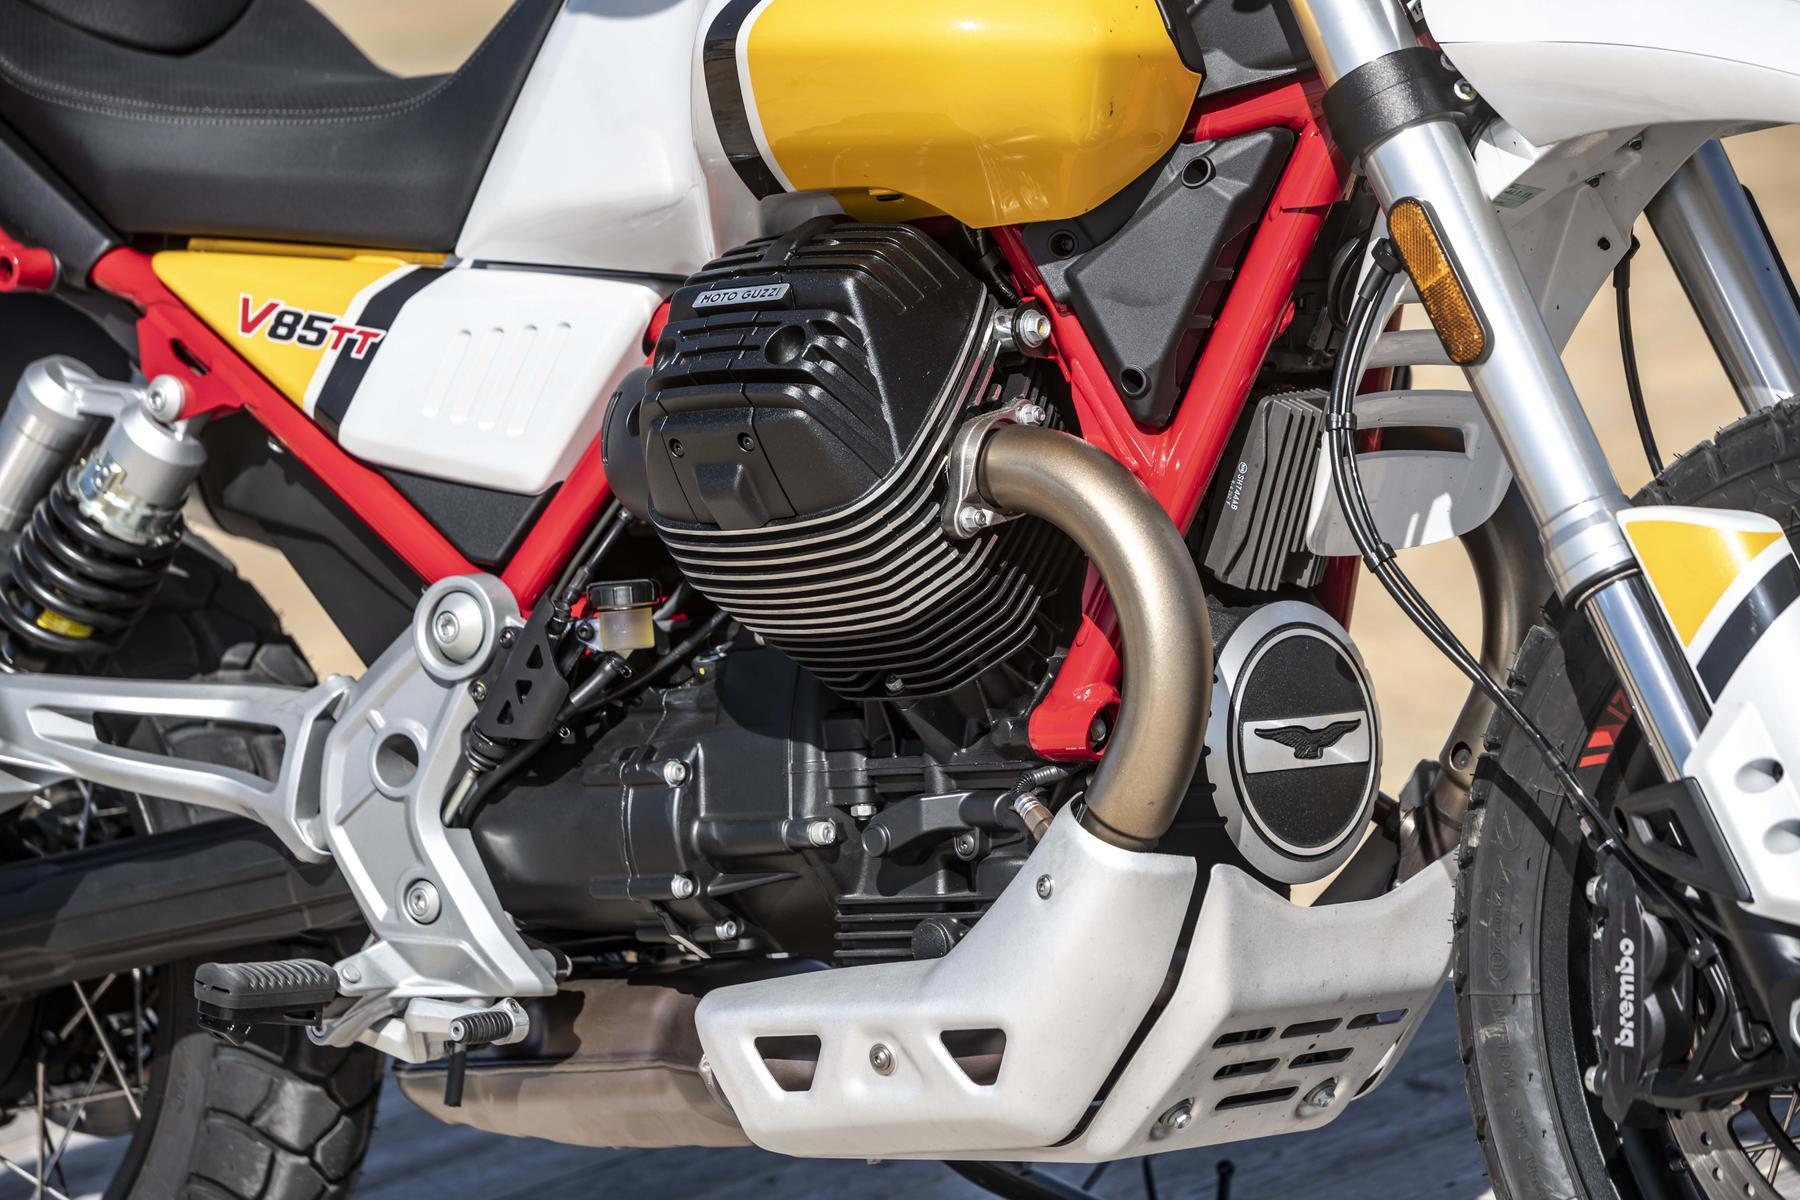 Moto Guzzi dikabarkan tengah menyiapkan motor baru yang dibangun dari platform V7. Motor ini disebut-sebut memiliki julukan V850X. Foto spyshot motor tersebut sempat diunggah oleh Moto.it pada akhir Oktober 2021.